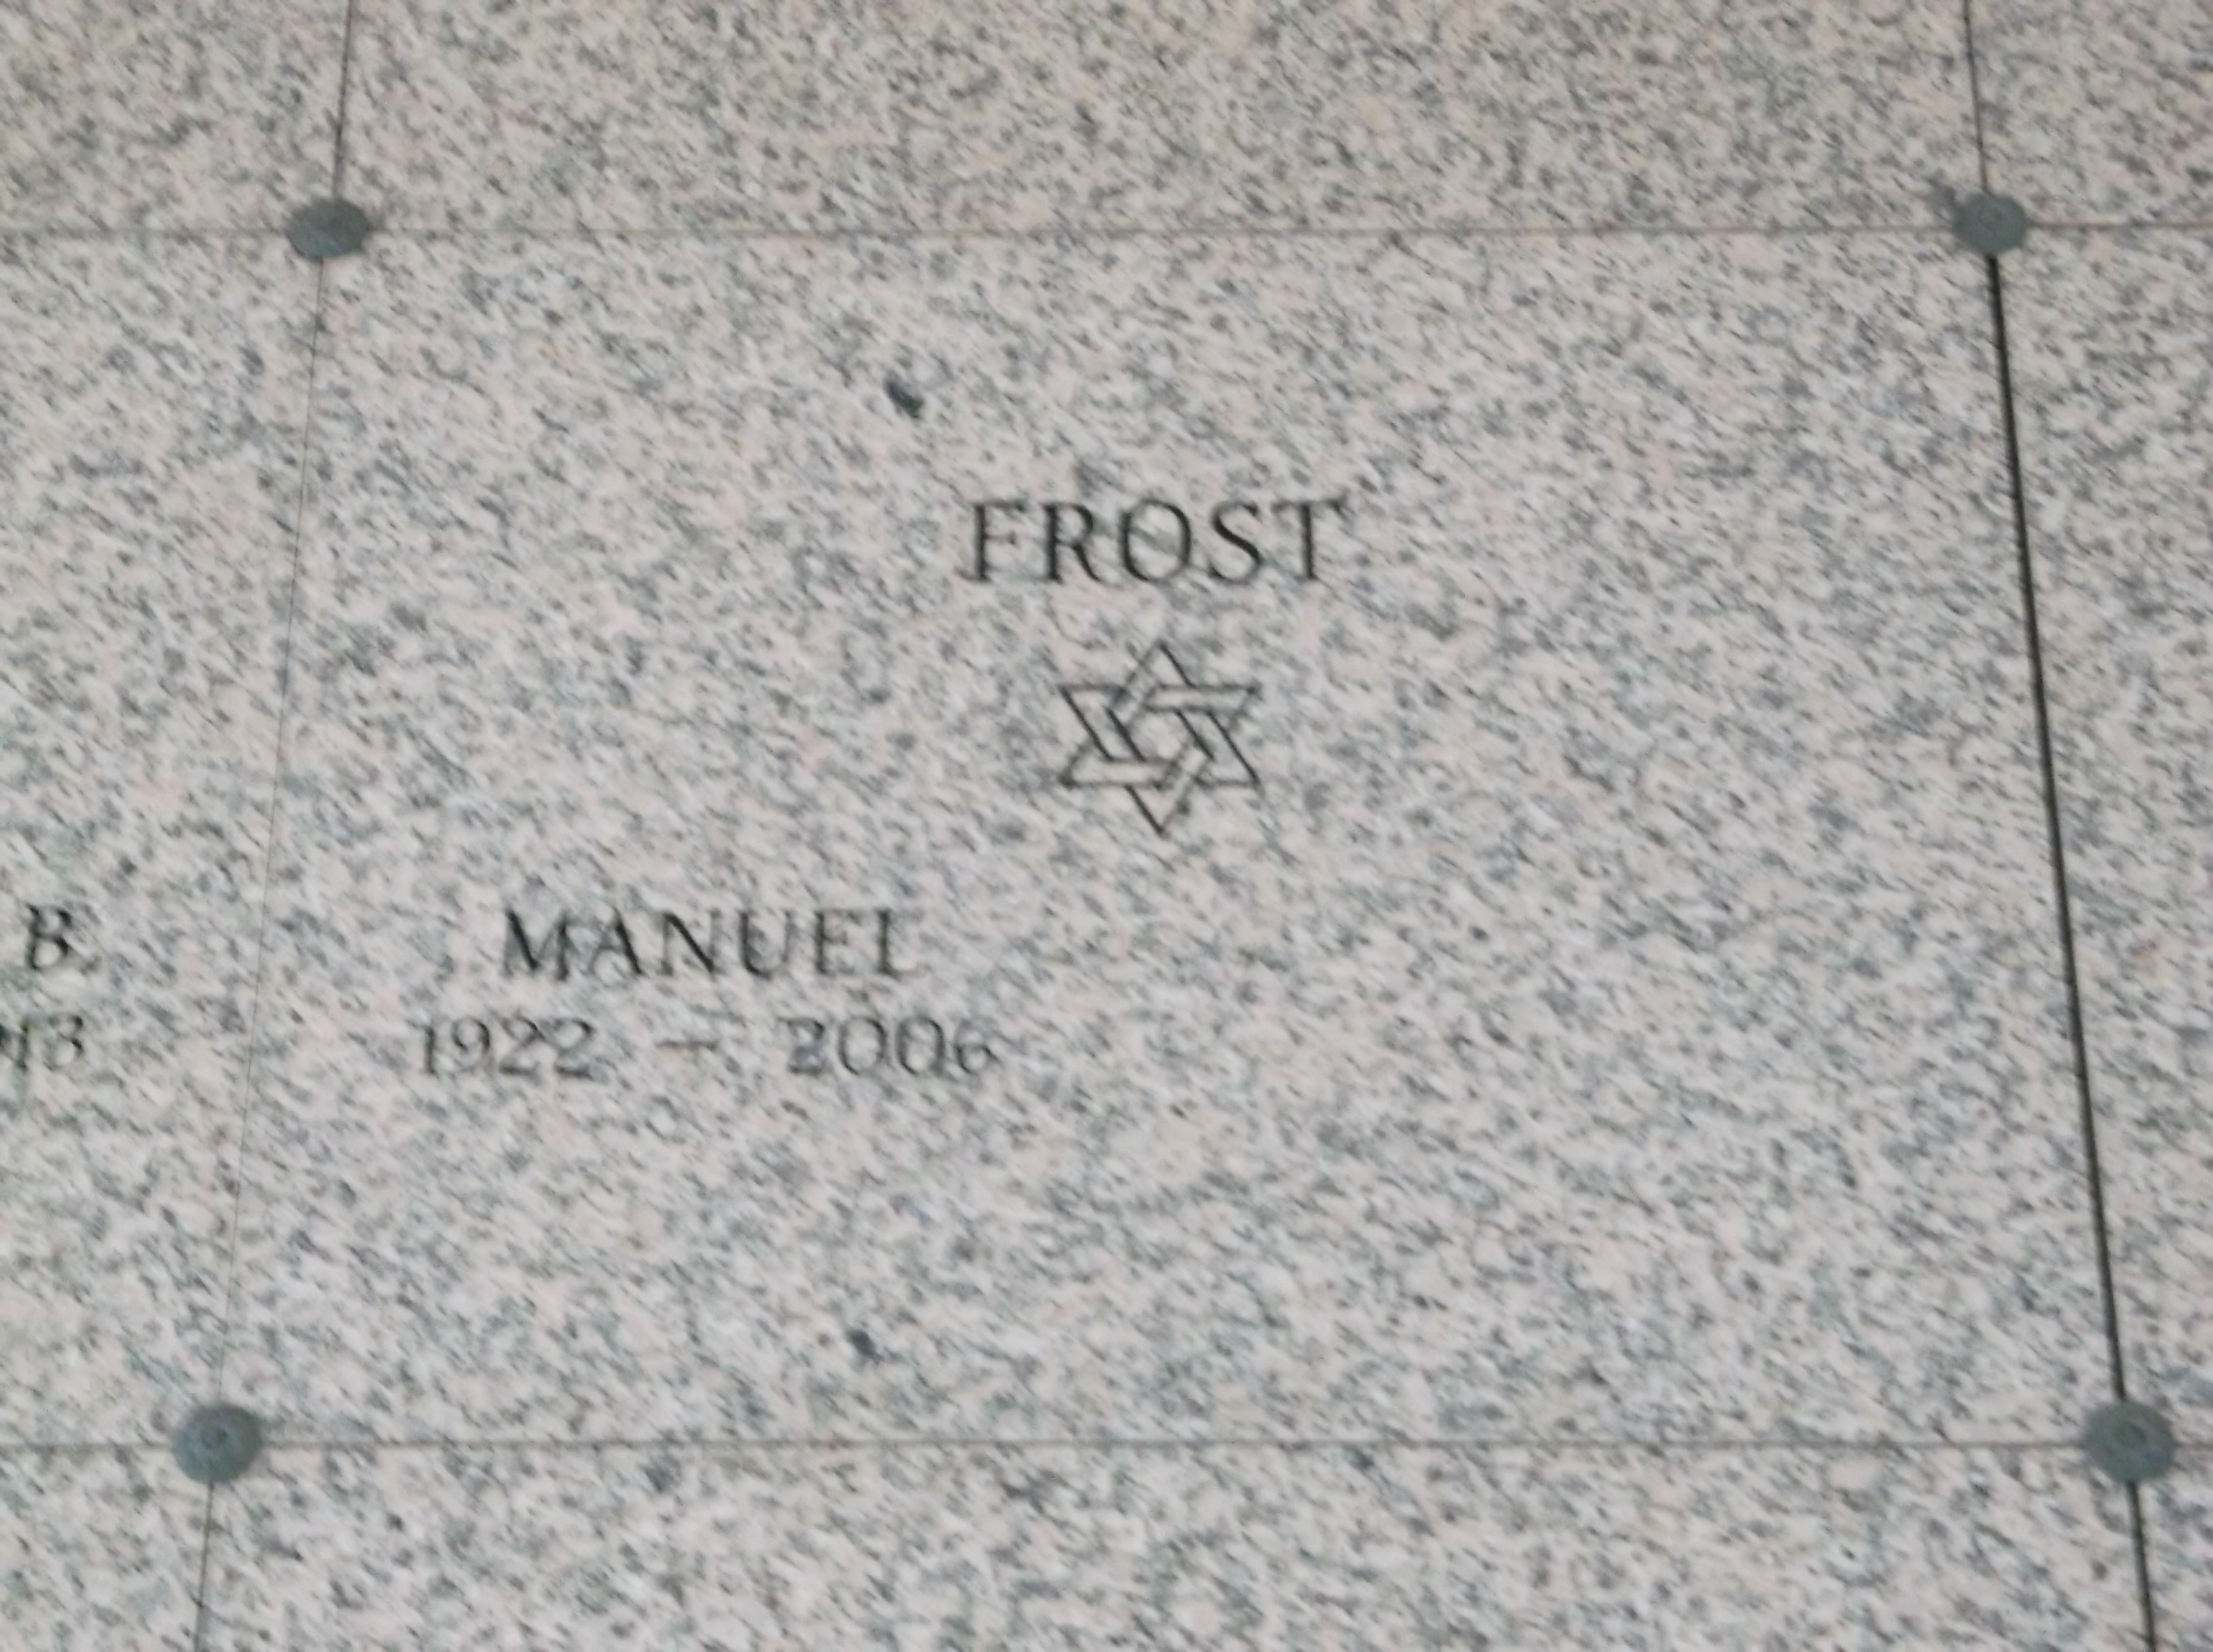 Manuel Frost